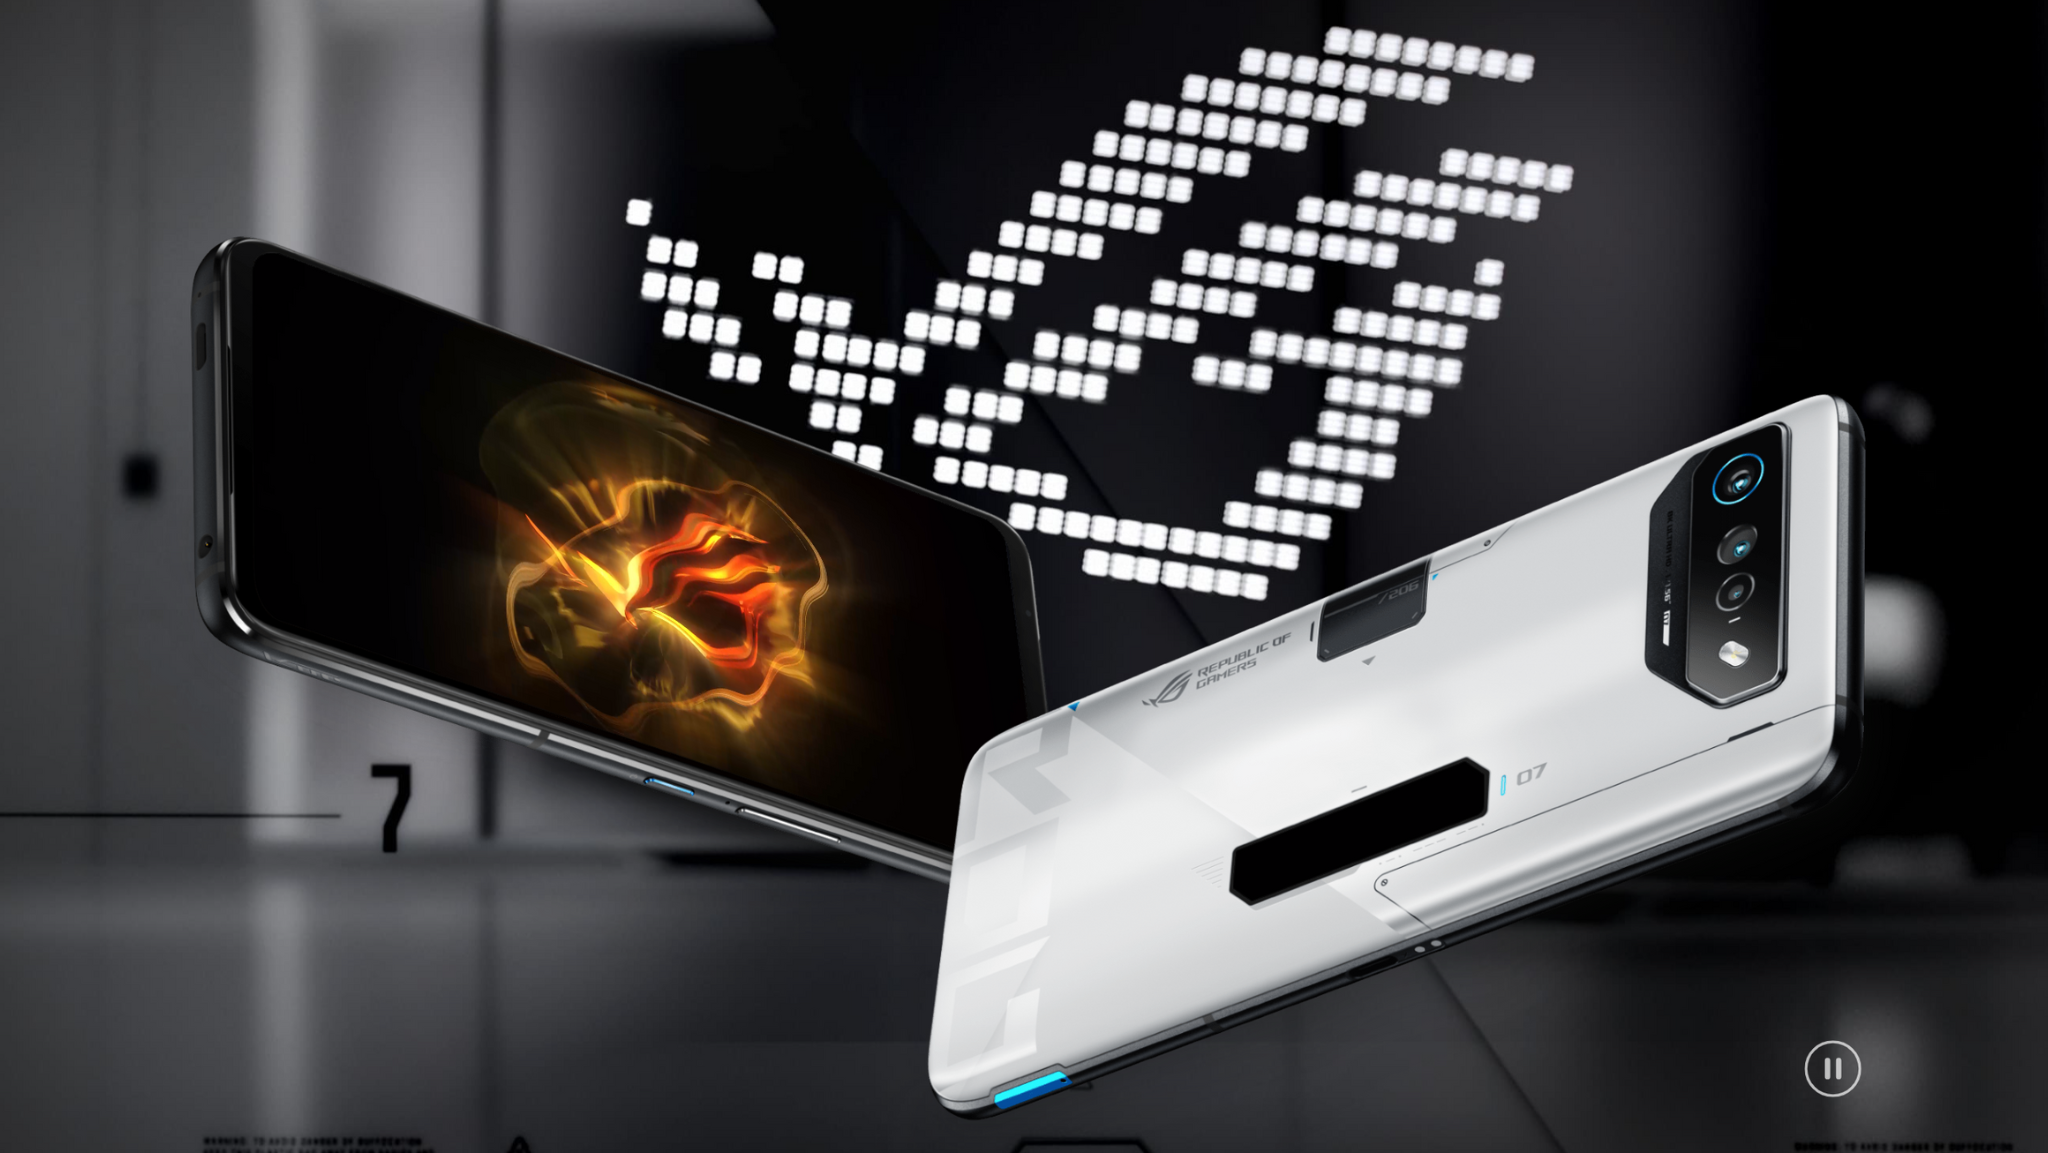 สเปค ROG Phone 7 Series เกมมิ่งโฟนสุดโหด พร้อมชิป Snapdragon 8 Gen 2 เริ่มต้น 34,990 บาท